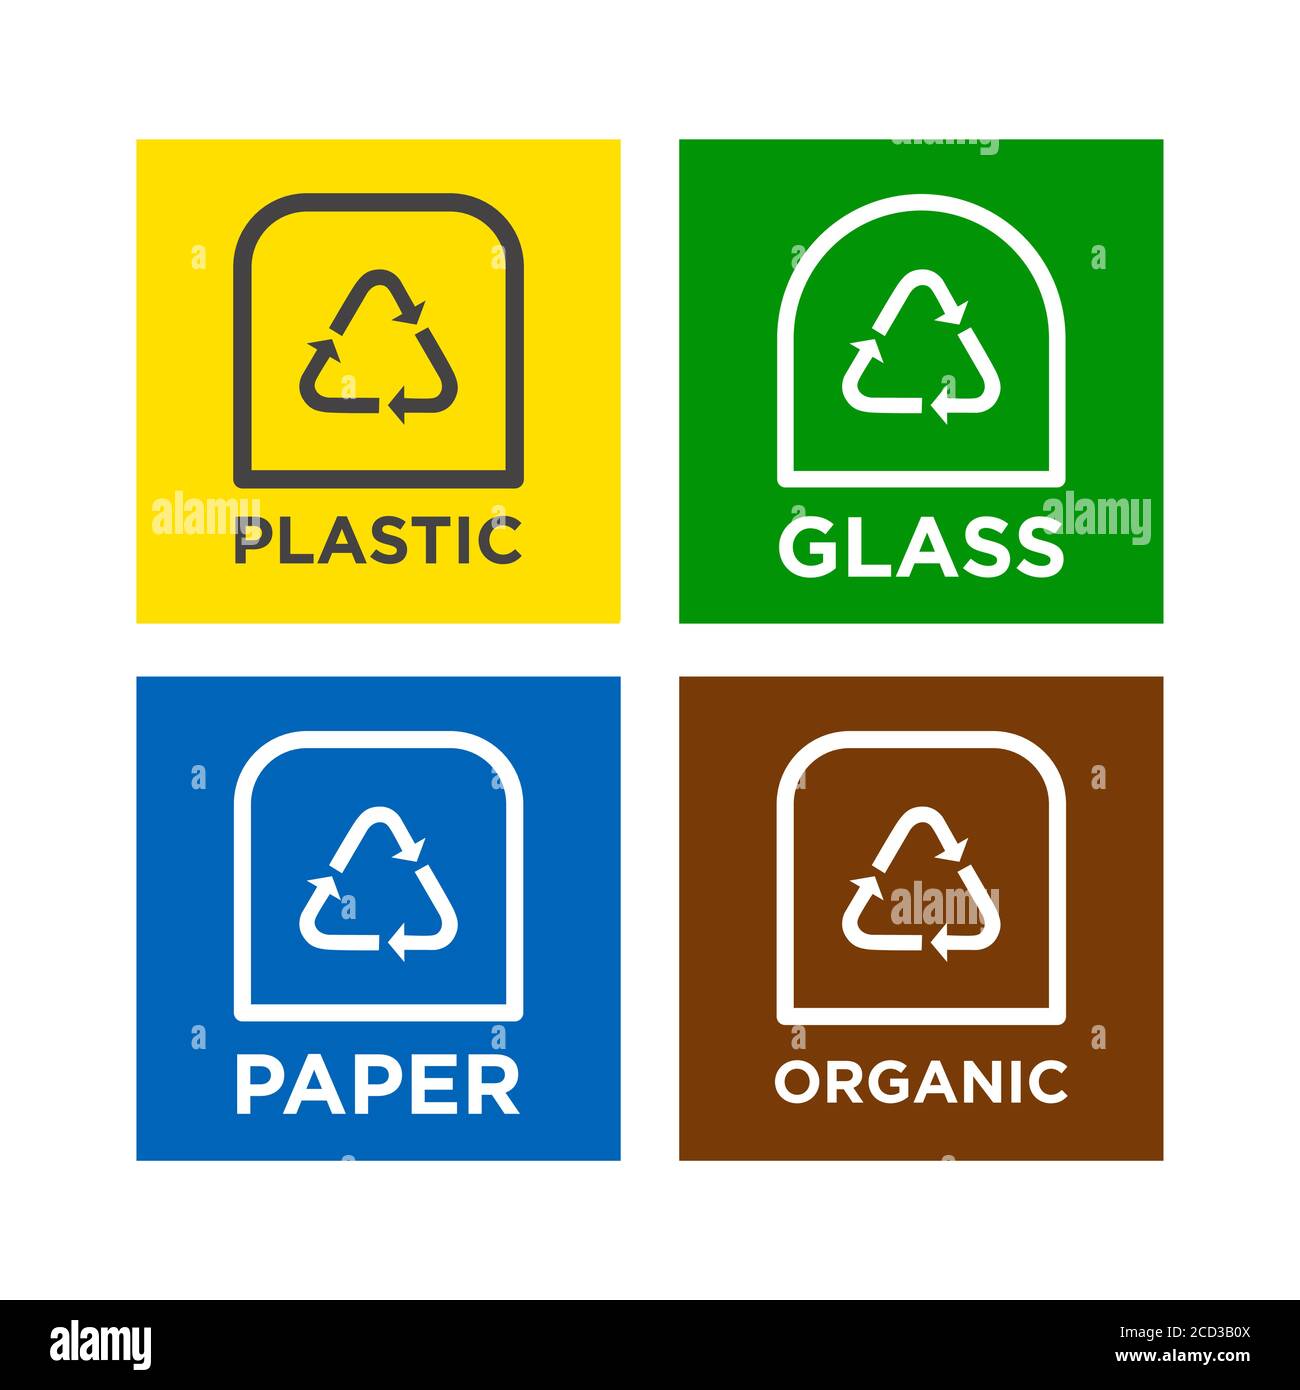 Informationssymbole für Produktetiketten zum Recycling. Symbole für Papier, Glas, Verpackungen und organisches Recycling. Stock Vektor